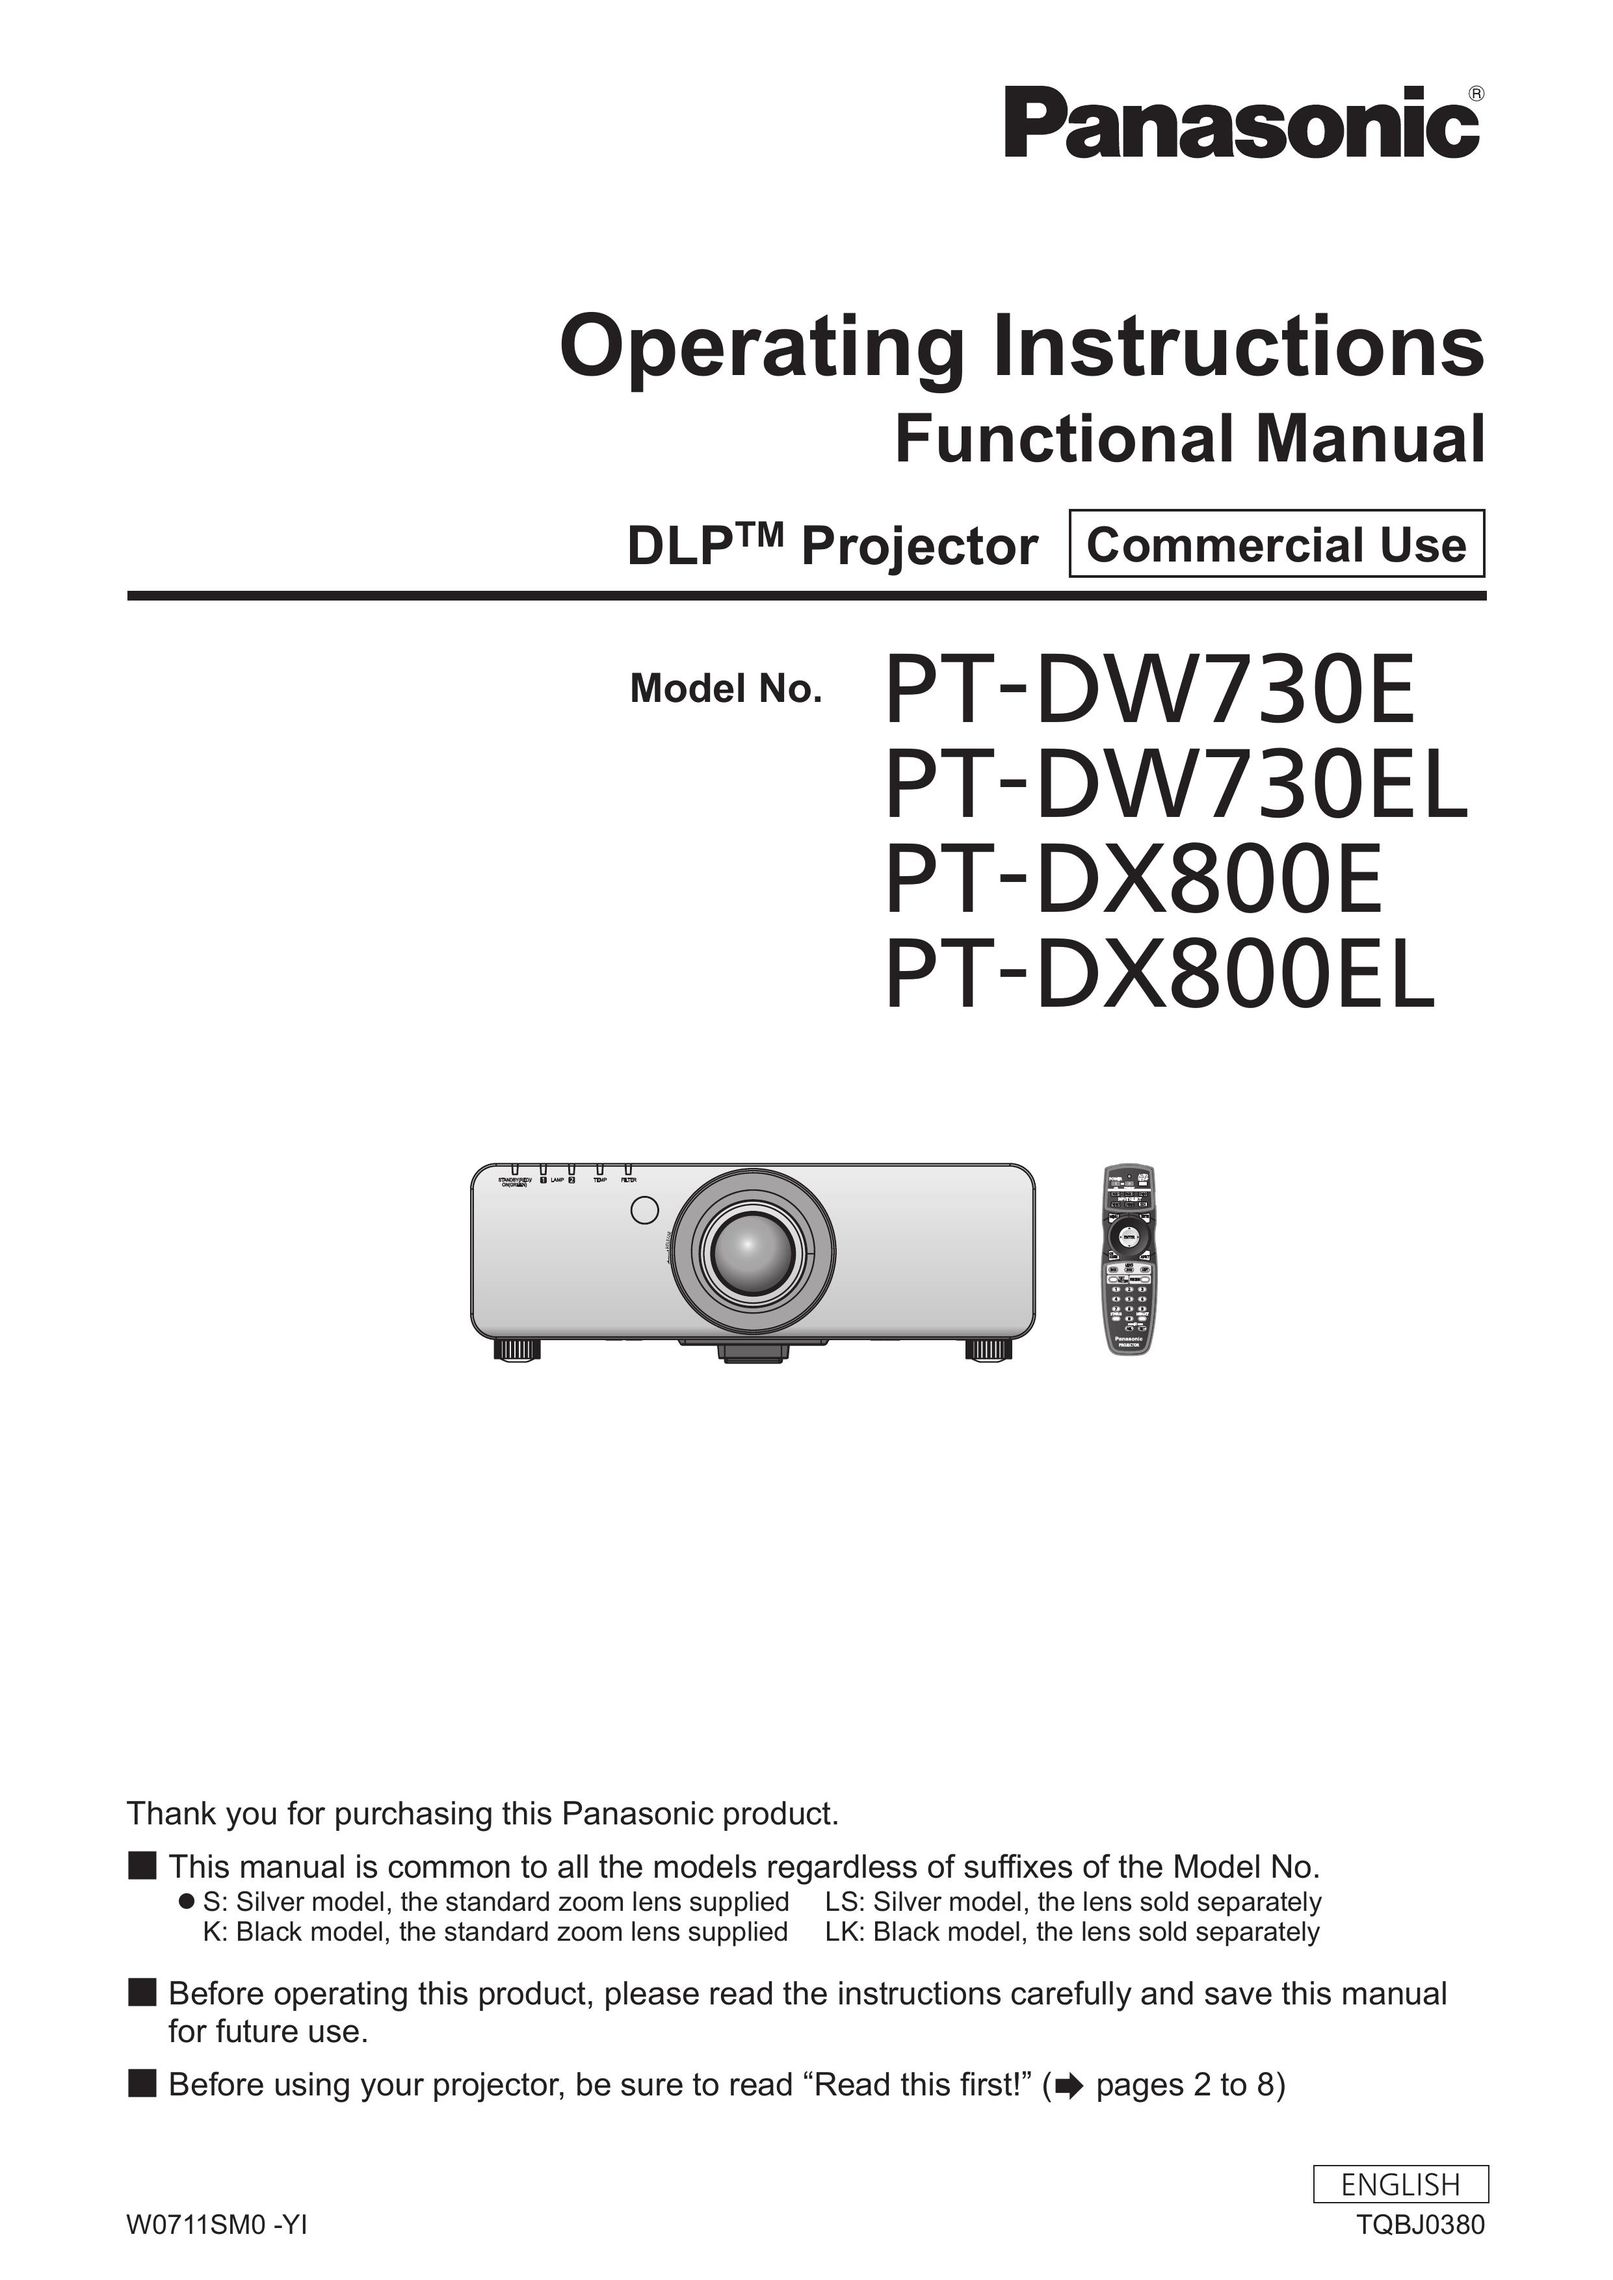 Panasonic PT-DX800EL Projector Accessories User Manual